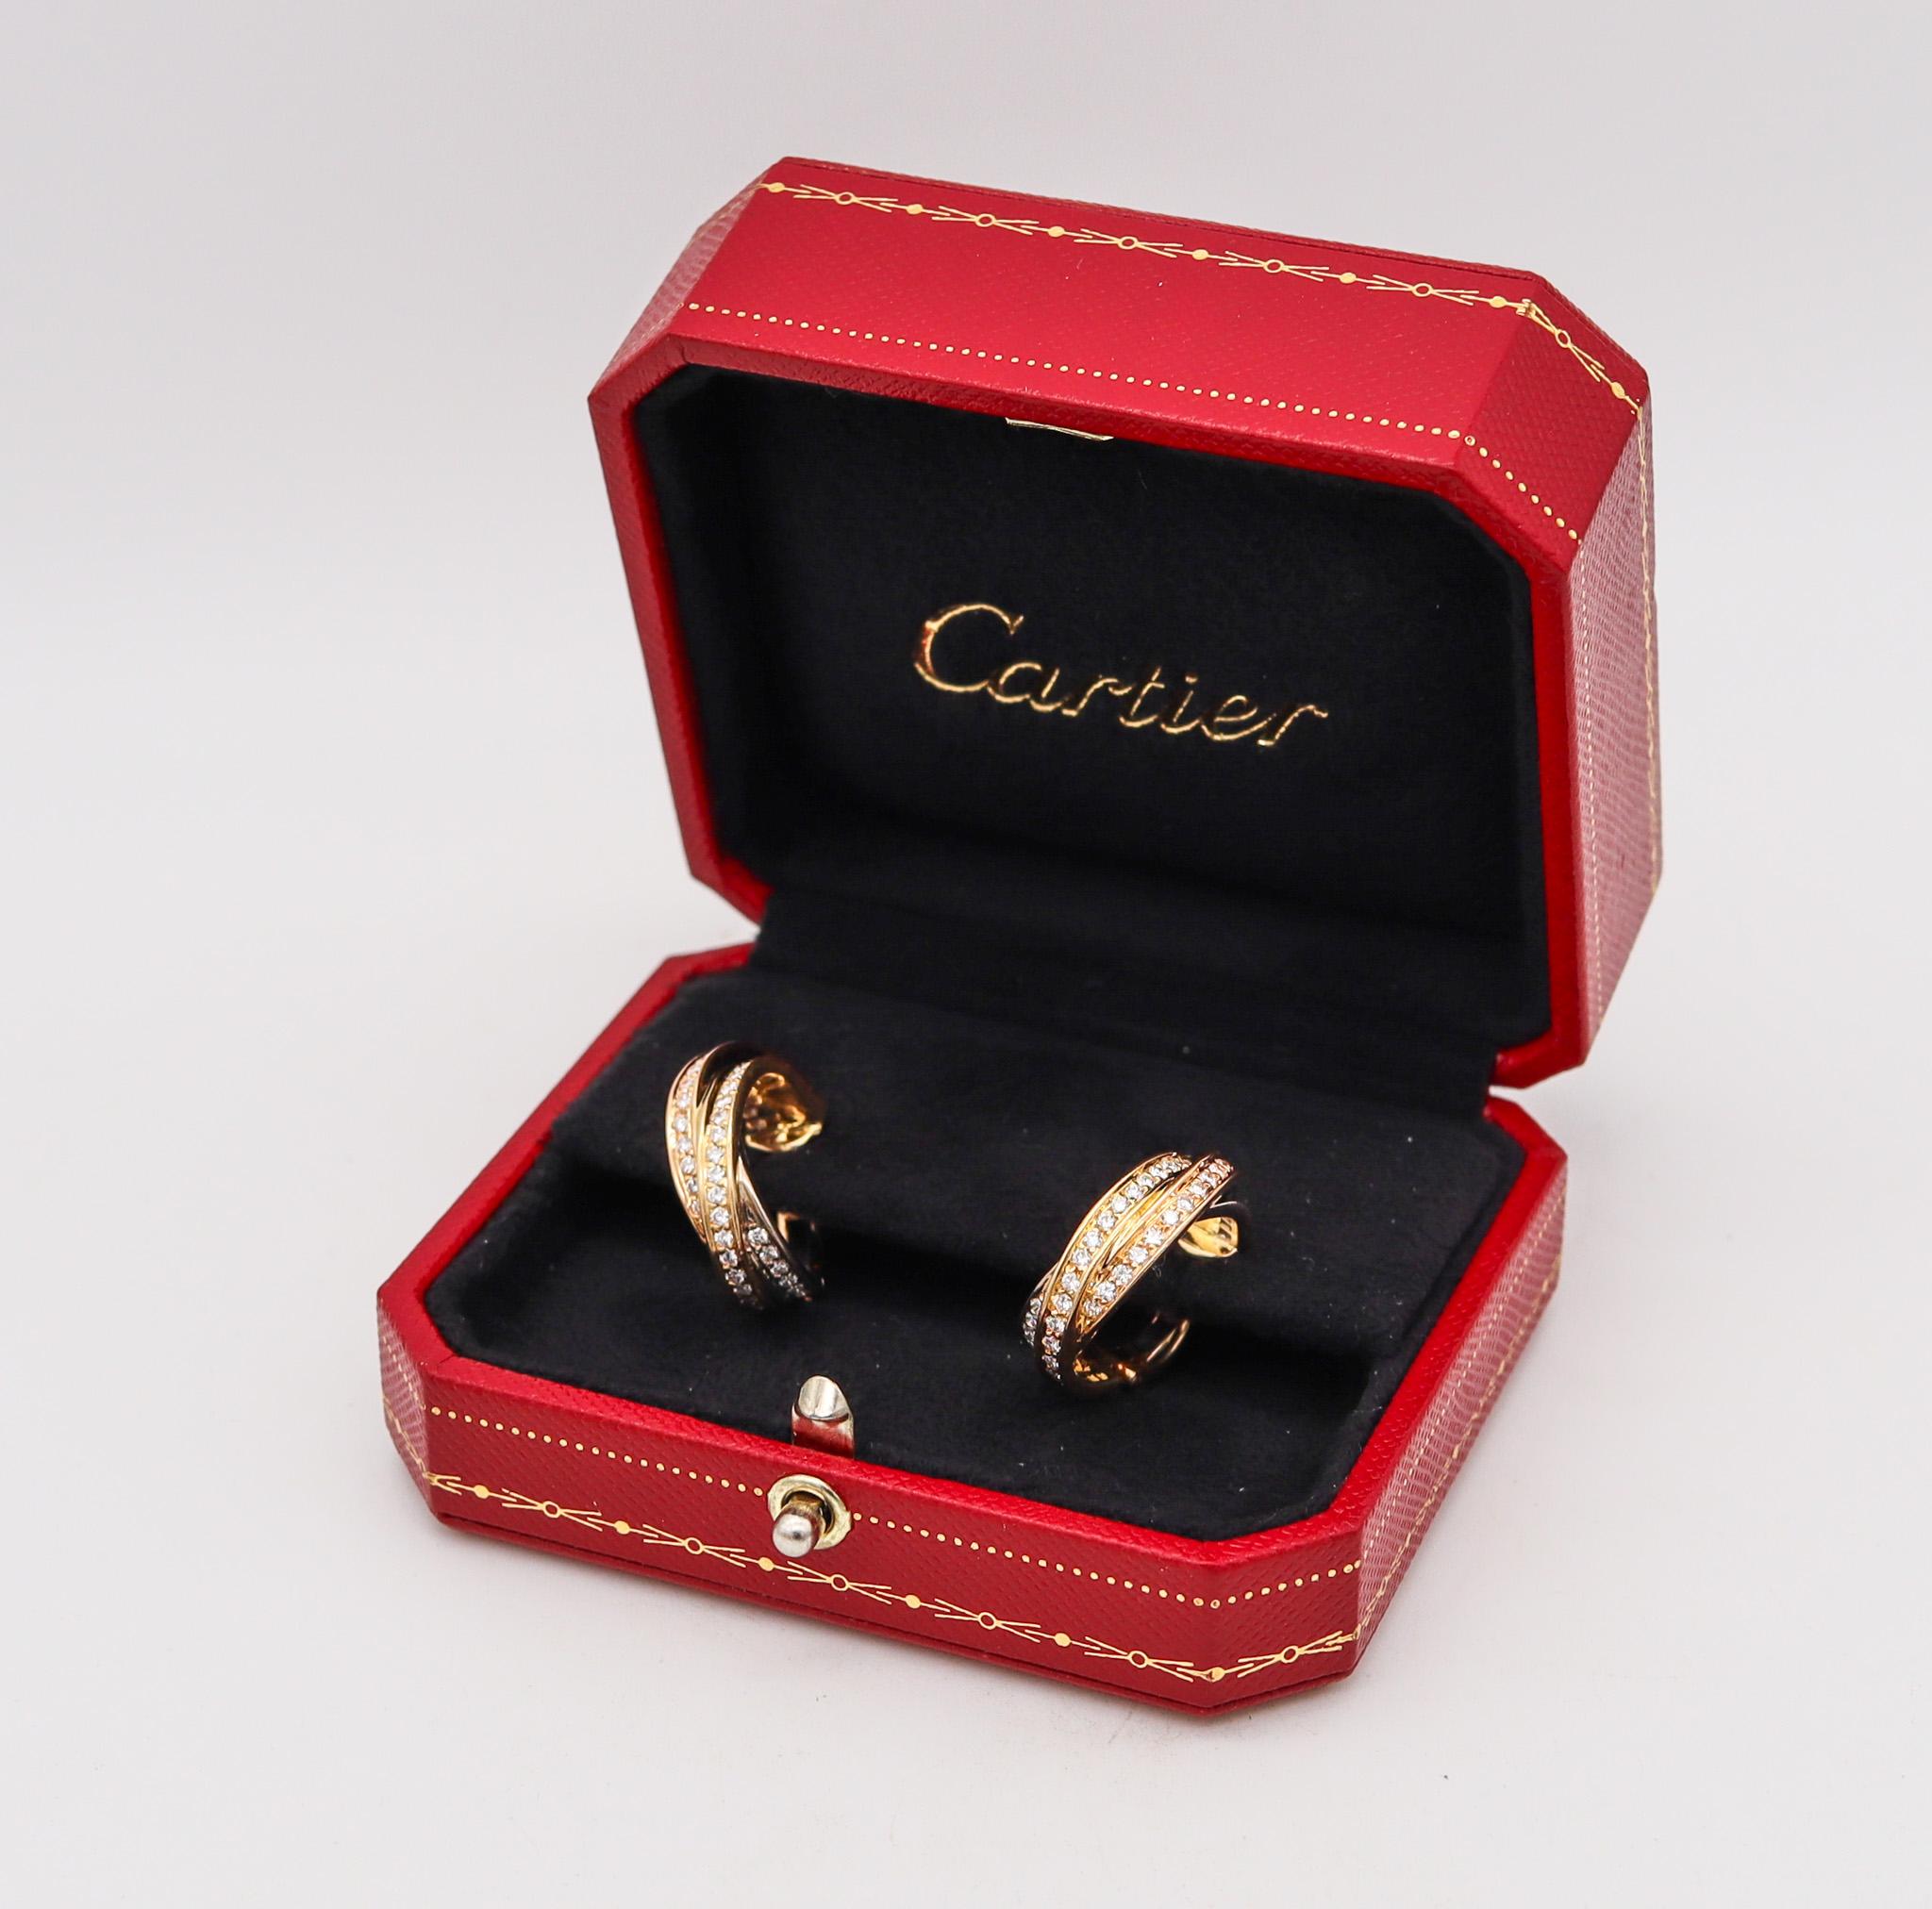 Trinity-Ohrringe, entworfen von Cartier.

Schönes Paar Ohrringe für jeden Tag, die in Paris Frankreich vom Schmuckhaus Cartier geschaffen wurden. Diese kultigen Ohrringe sind in drei Farben aus 18 Karat gefertigt und hochglanzpoliert. Sie sind mit